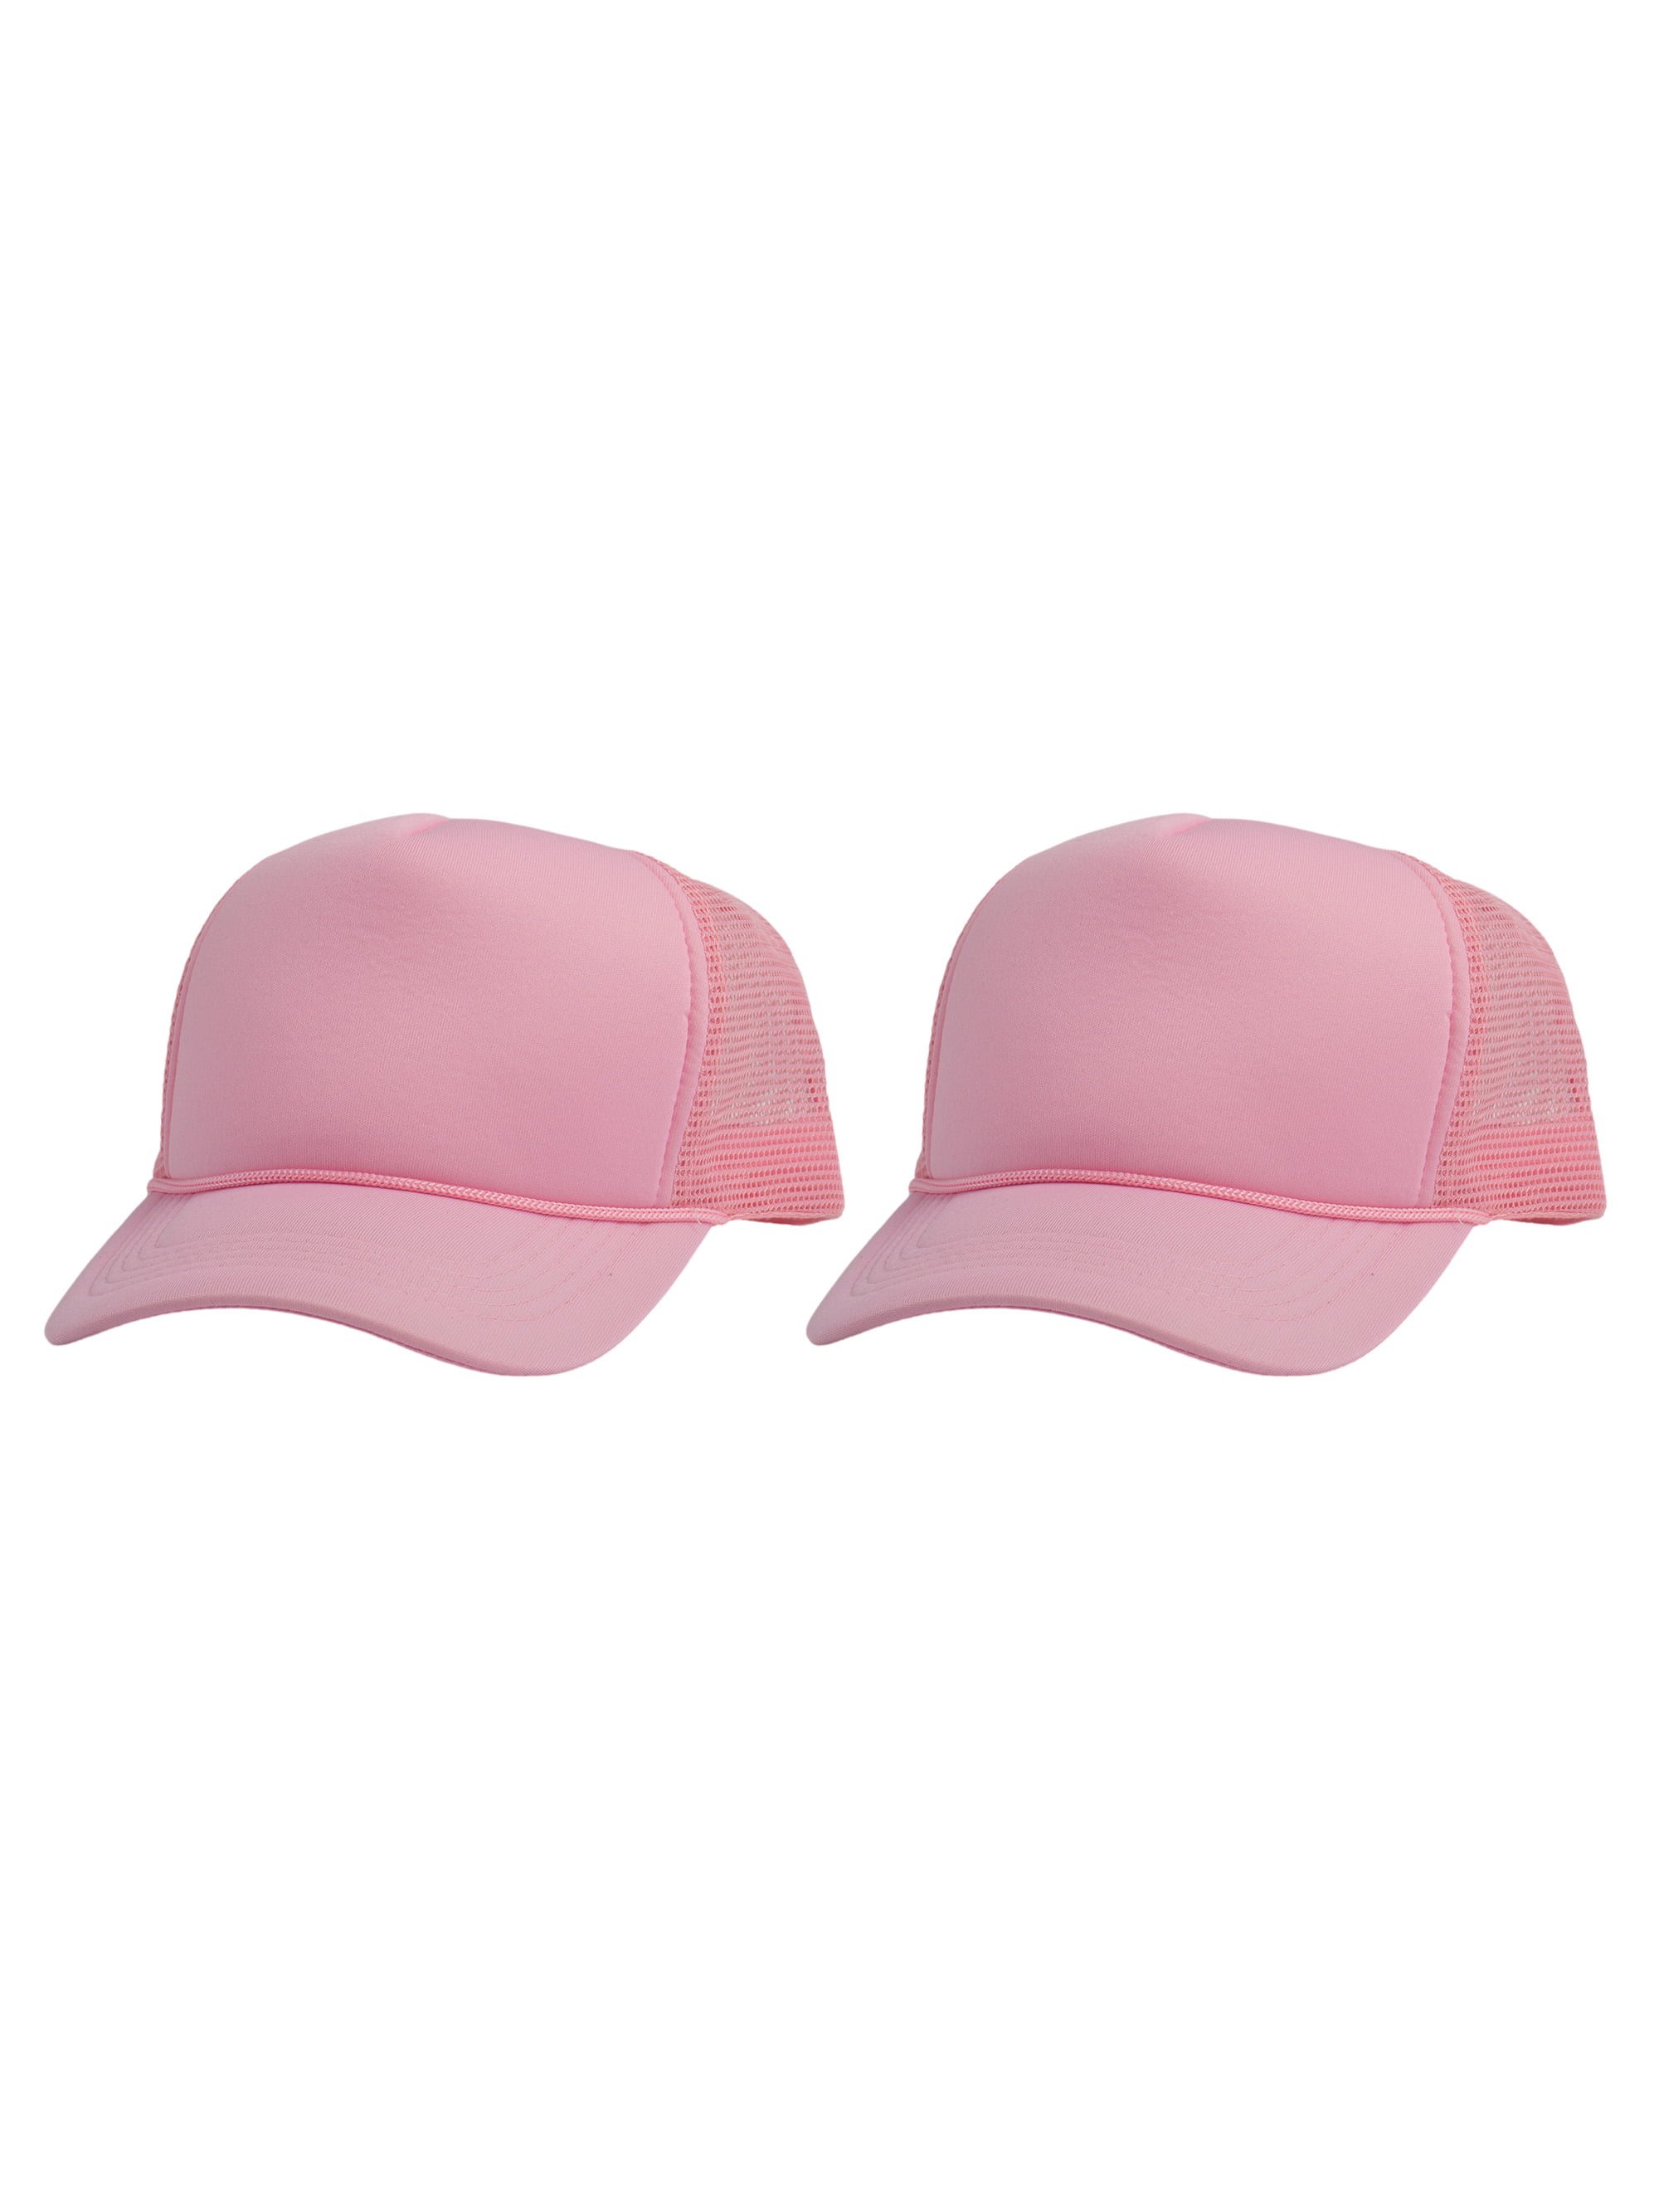 Top Headwear Men's Blank Rope Trucker Foam Mesh Plain Hats, 2PC Light Pink